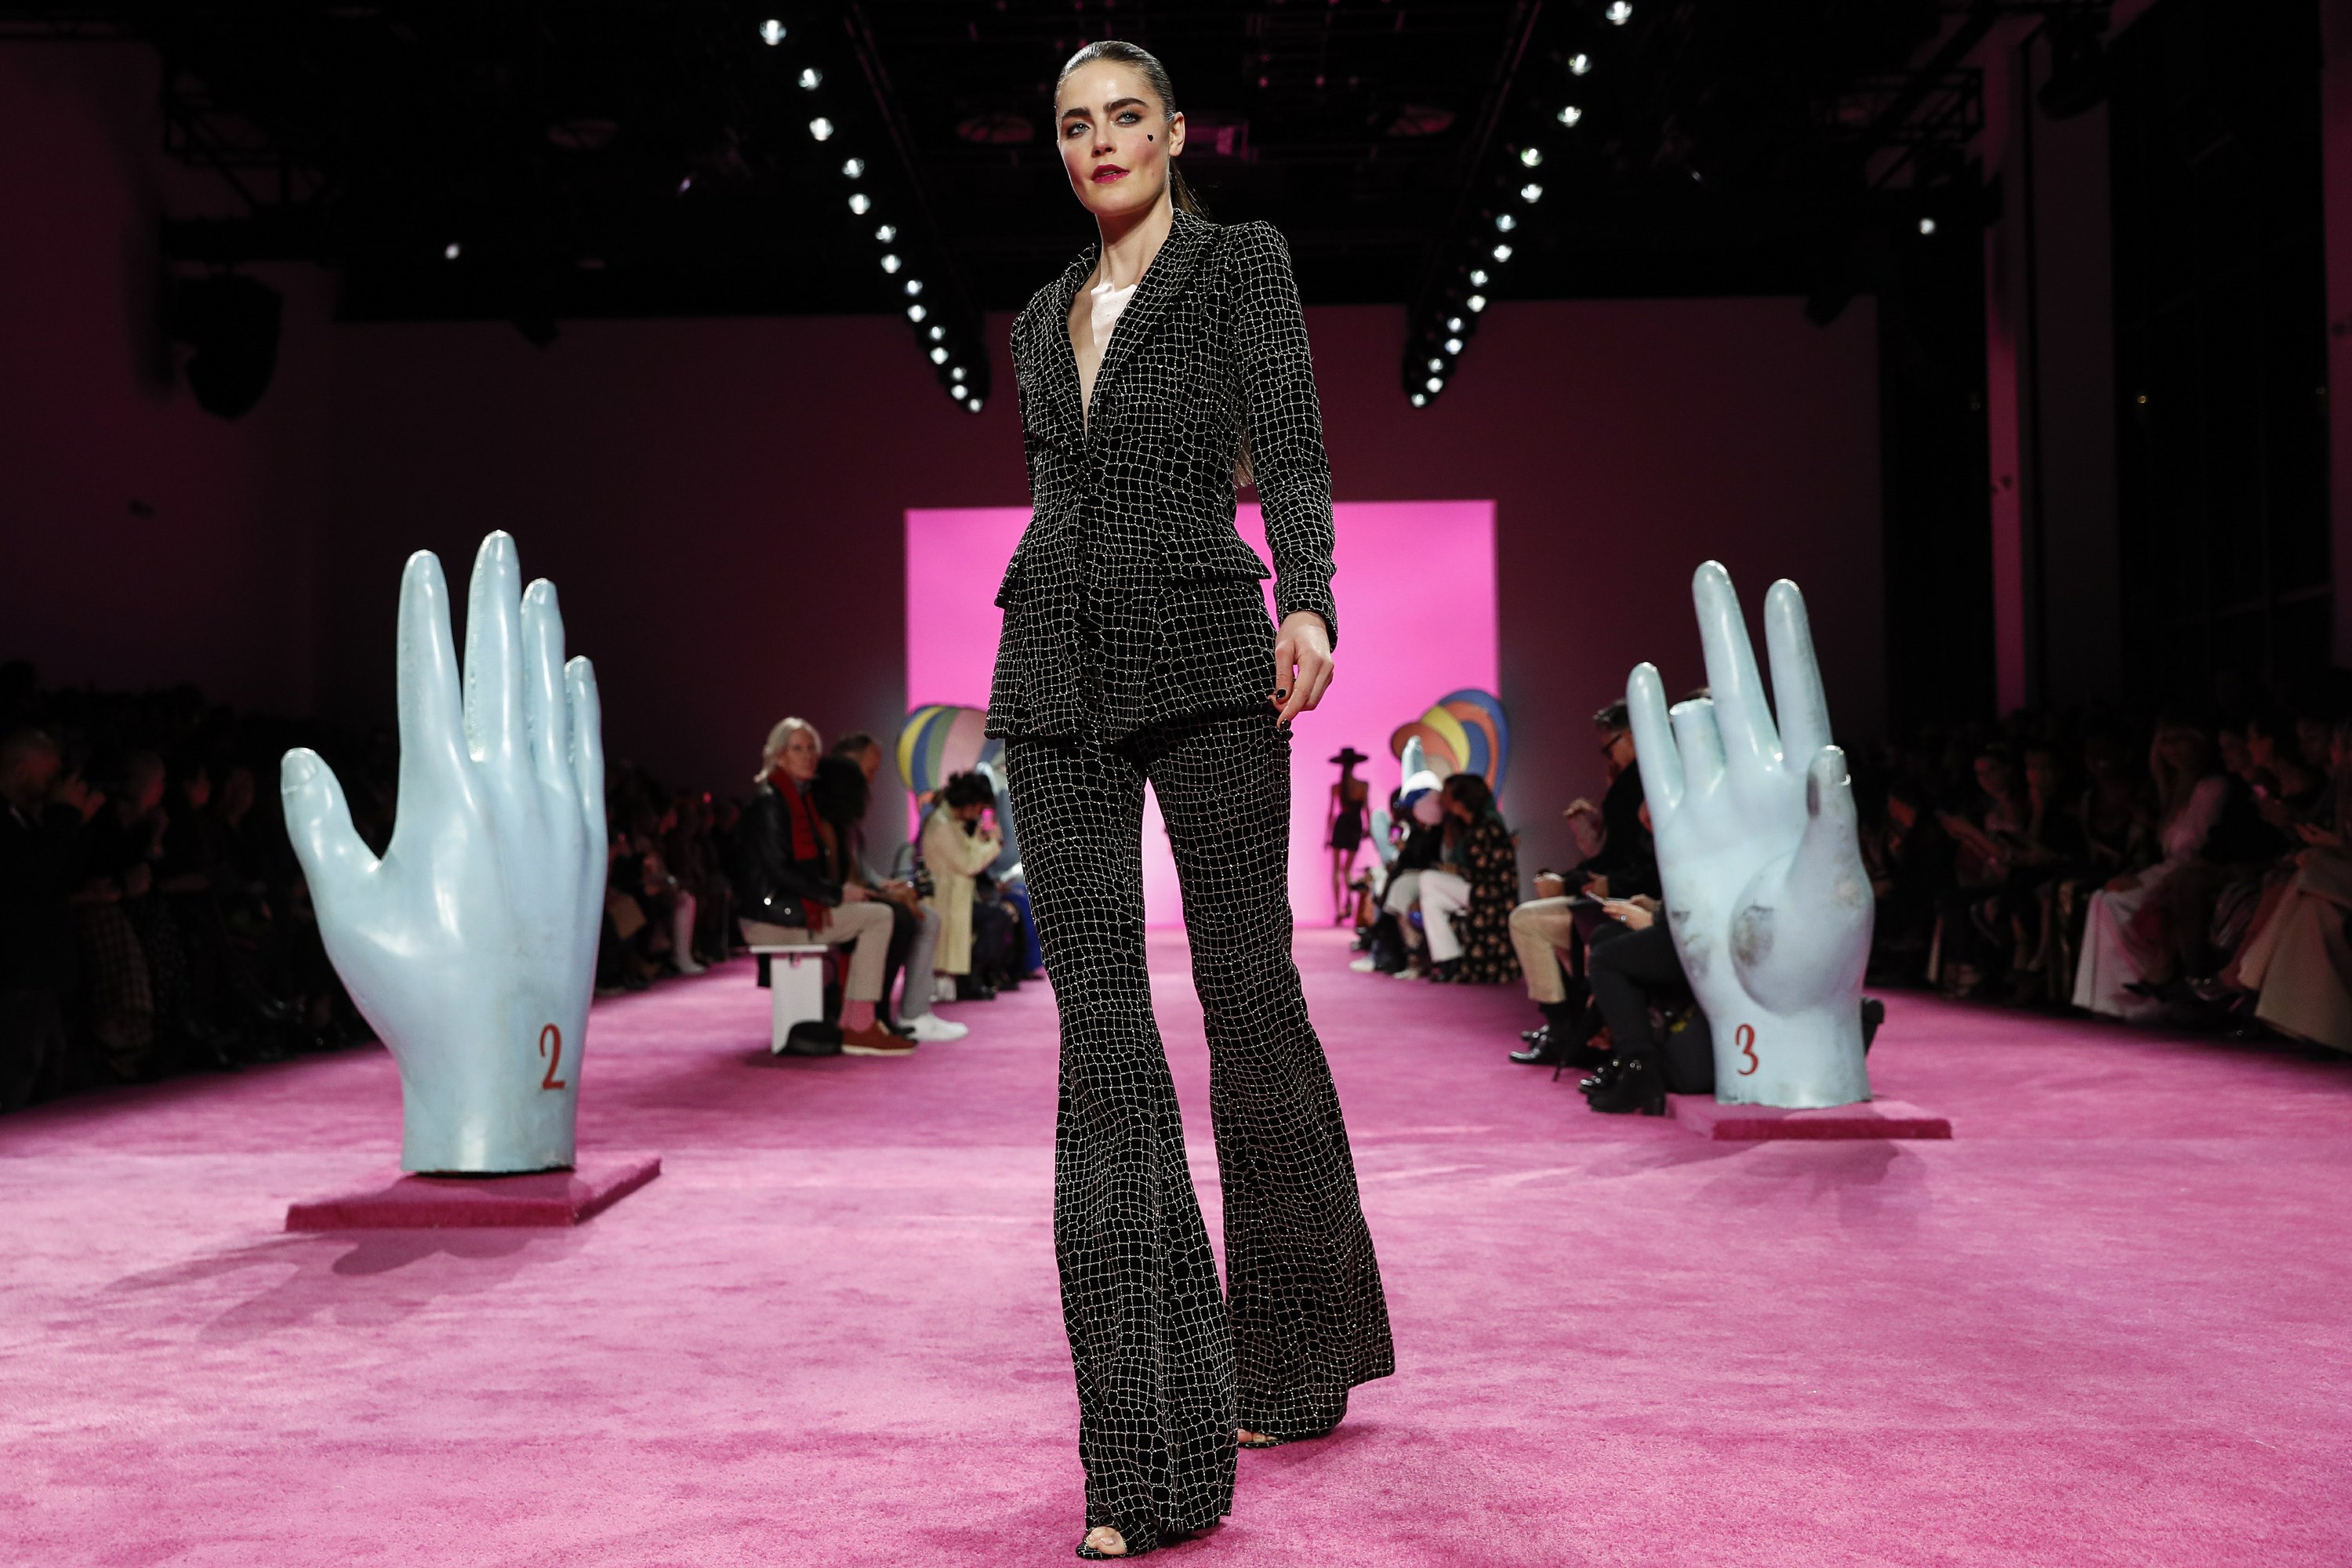 Ny Fashion Week 2020 Pared Down And Virtually All Virtual